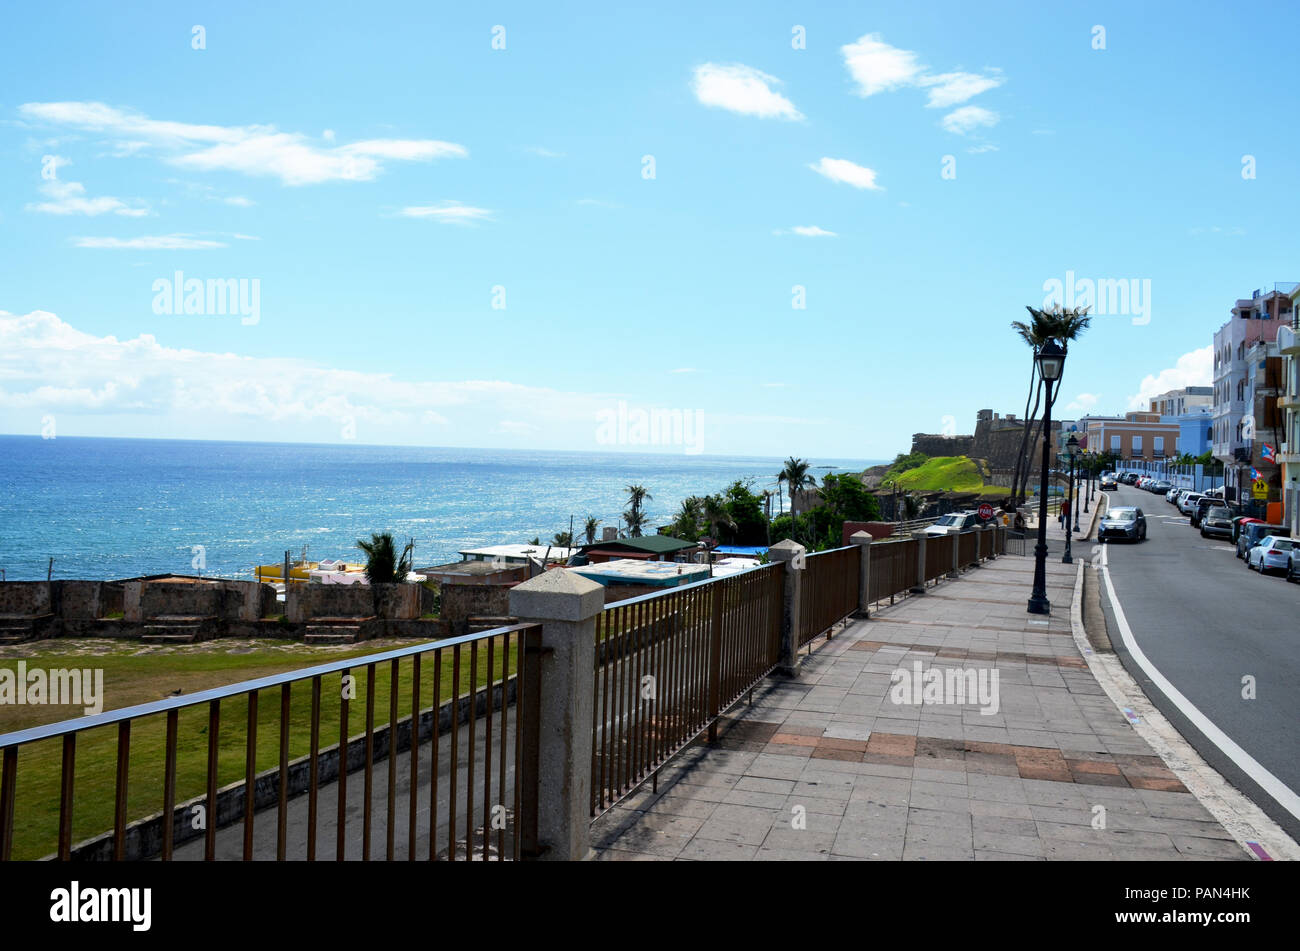 Isleta de barrio de San Juan en la Calle Norzagara en el Viejo San Juan, Puerto Rico Foto de stock